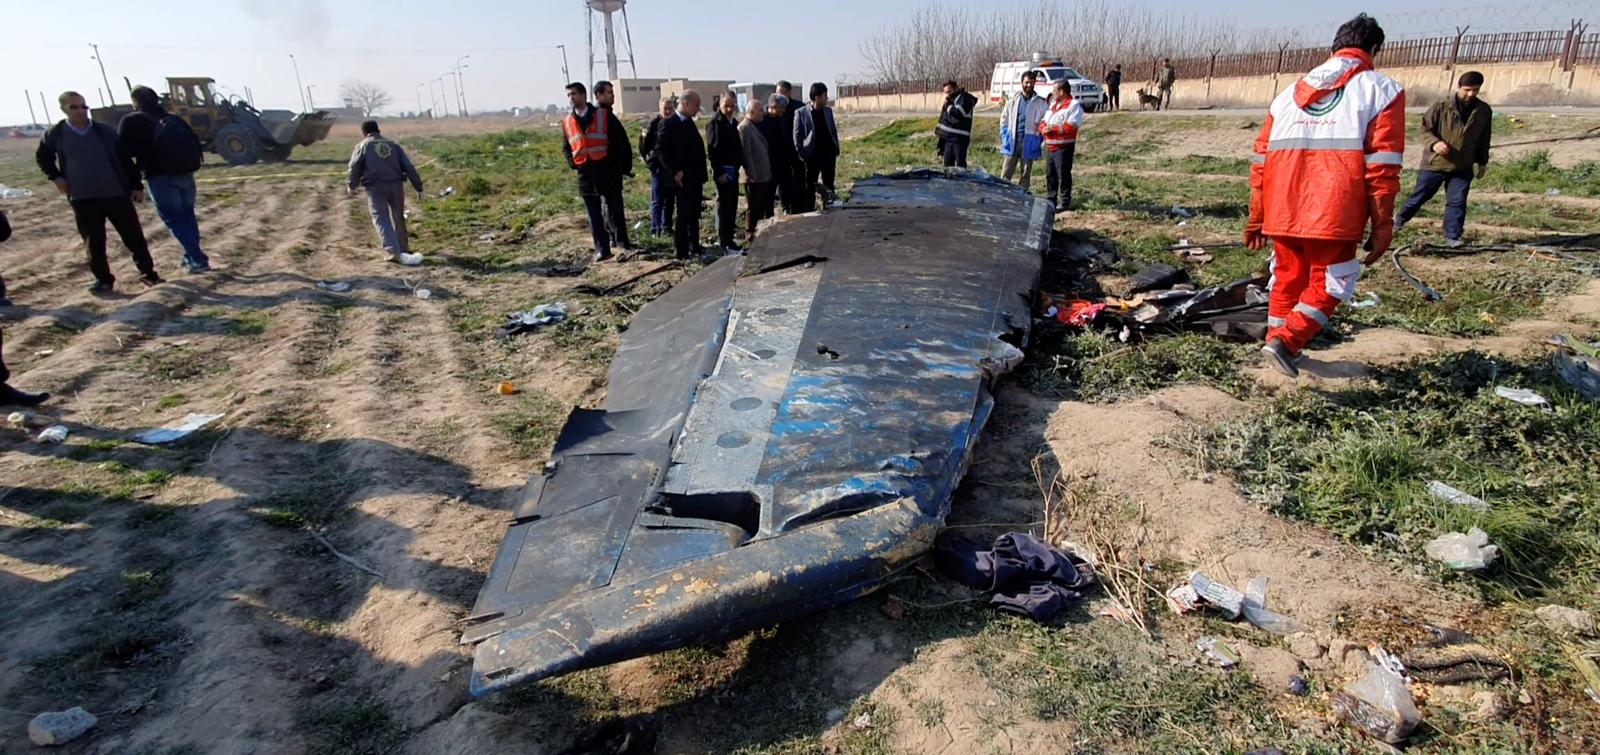 Iran admits it 'unintentionally' shot down Ukrainian aircraft